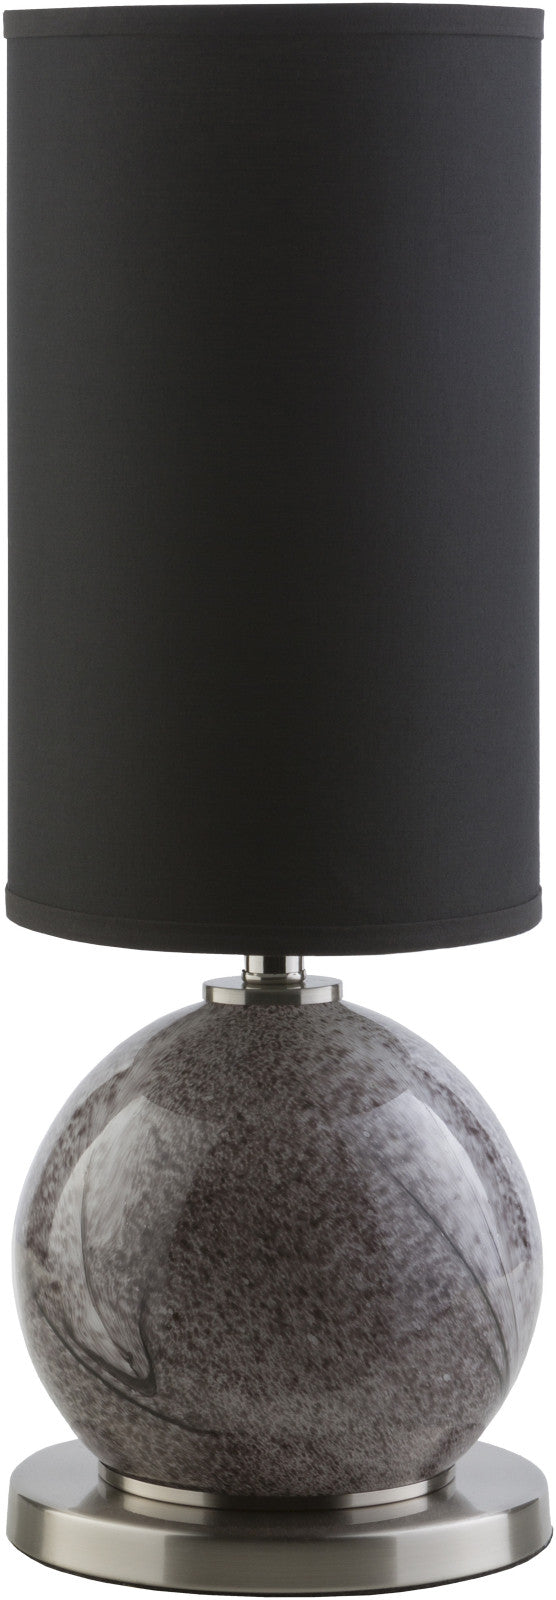 Surya Broderick BDC-481 Black Lamp Table Lamp